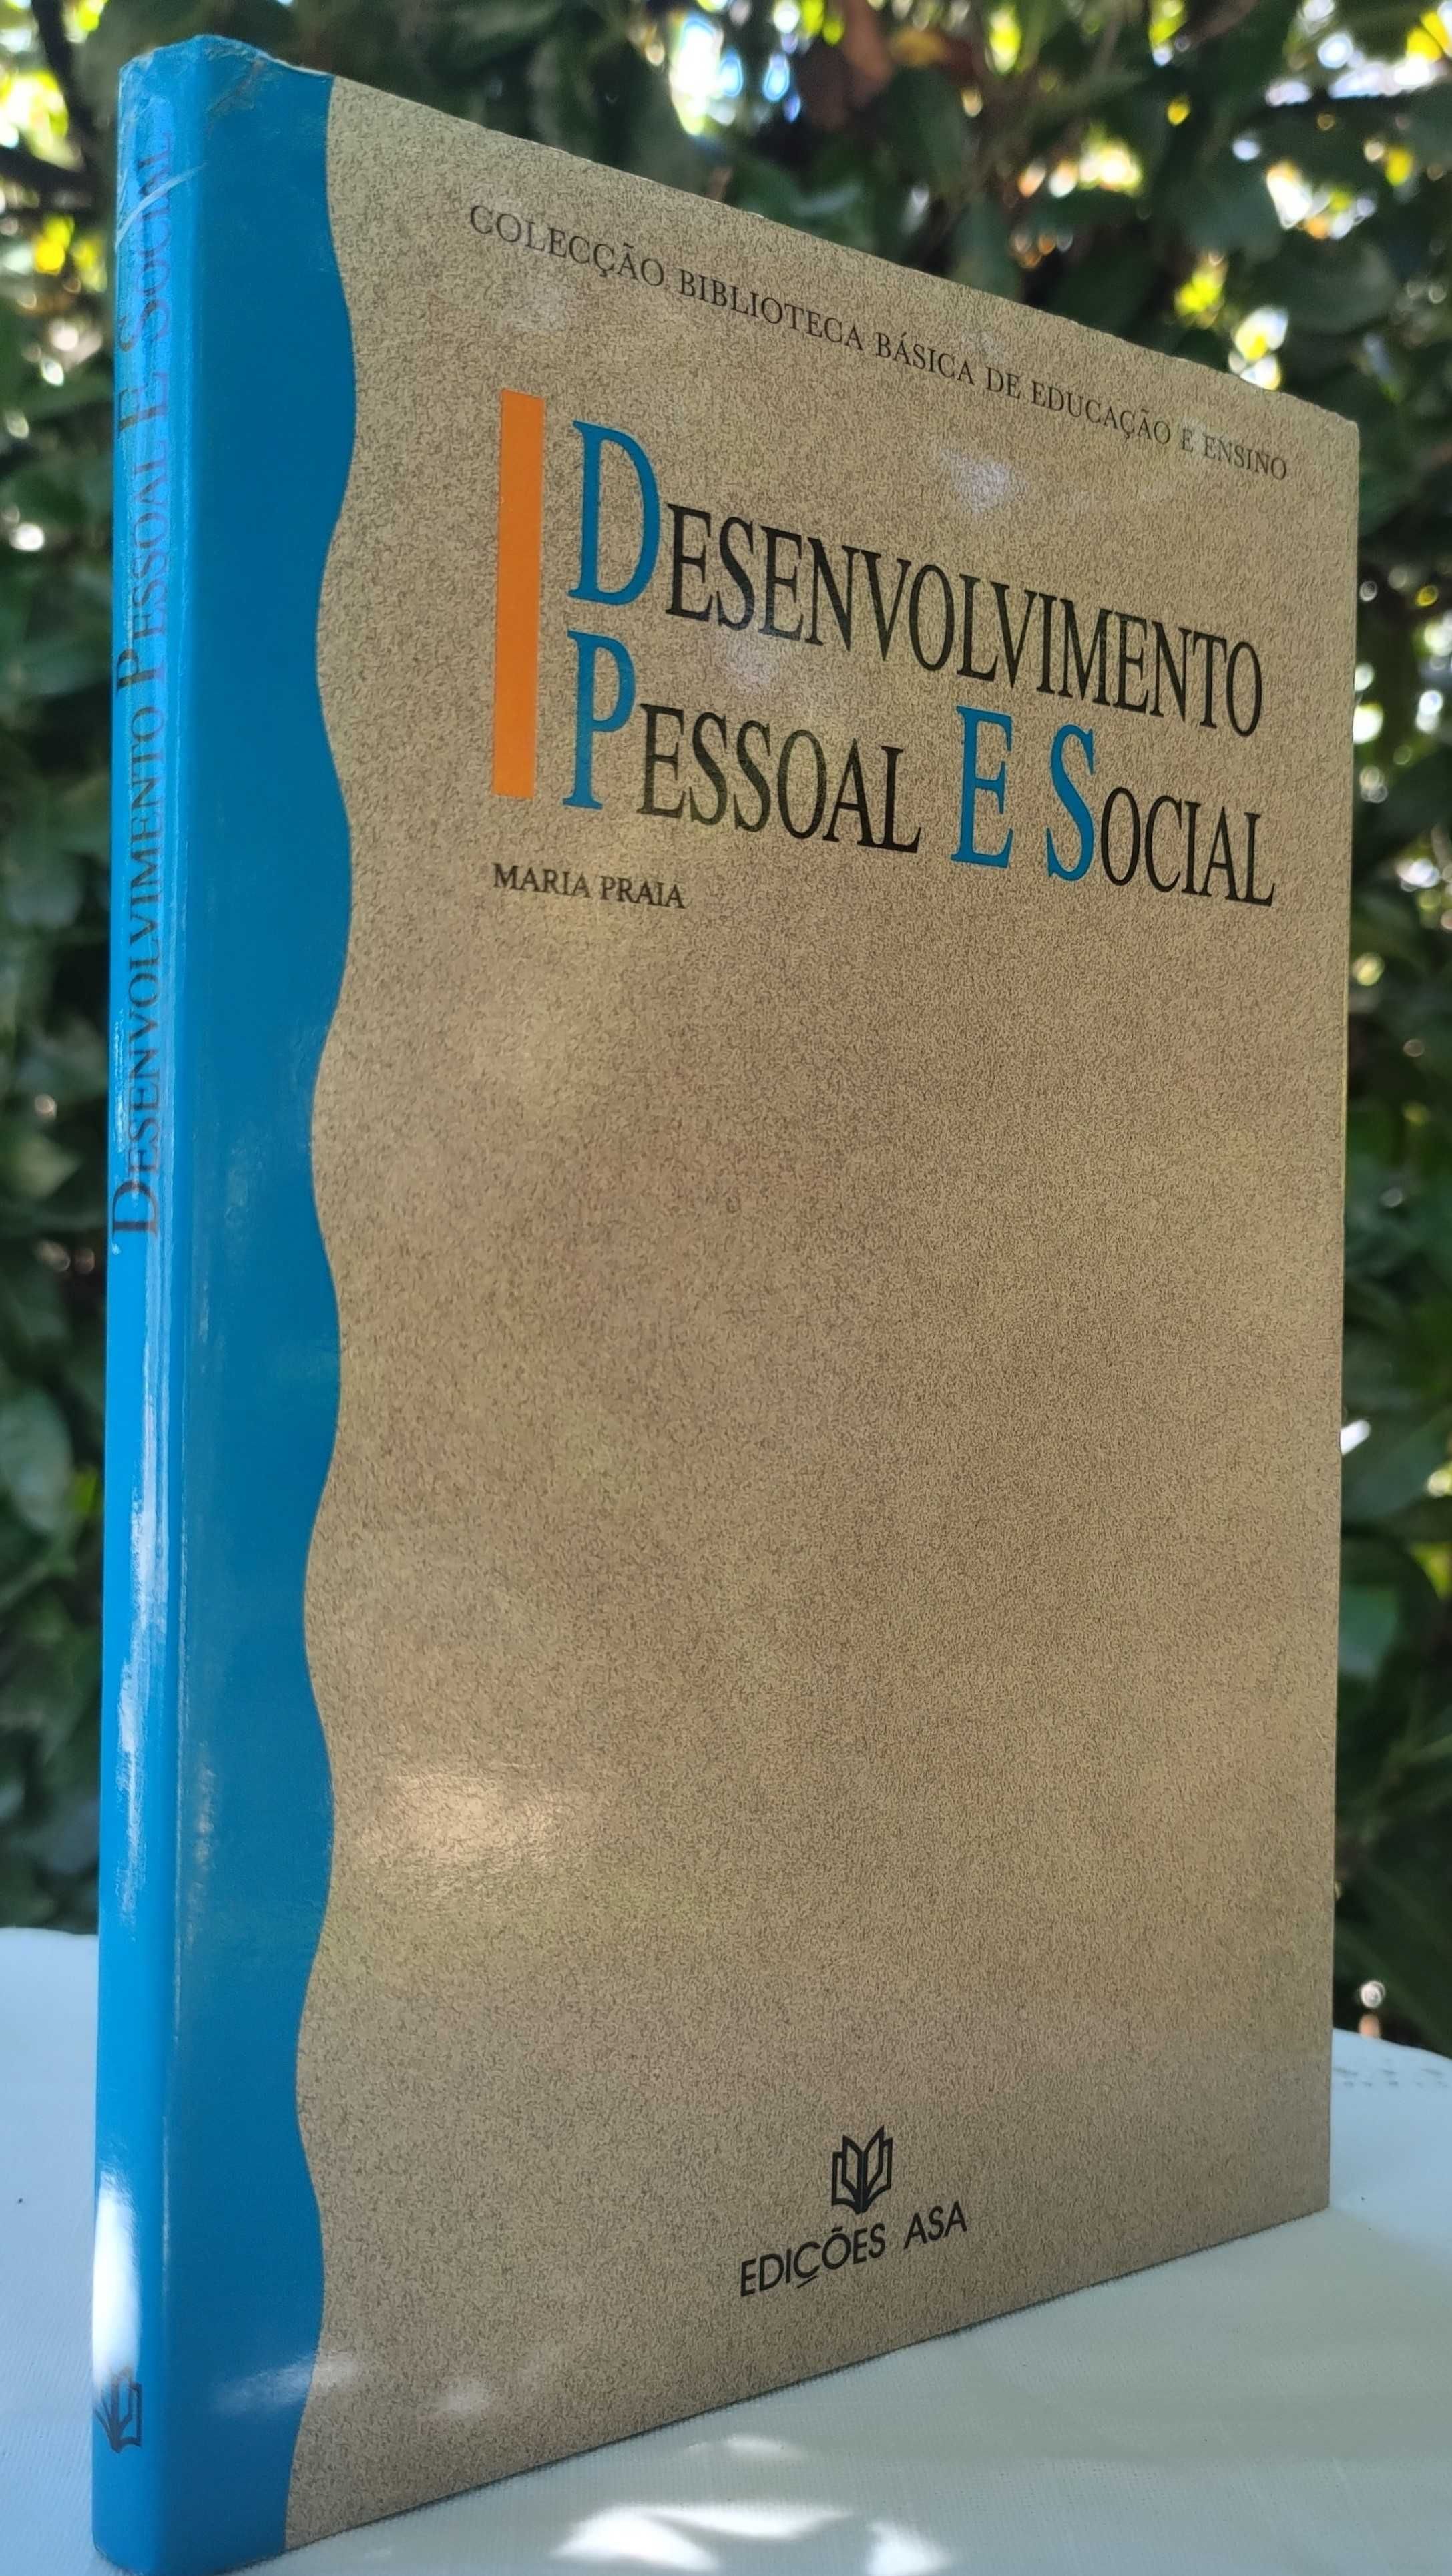 Desenvolvimento Pessoal e Social (Maria Praia)